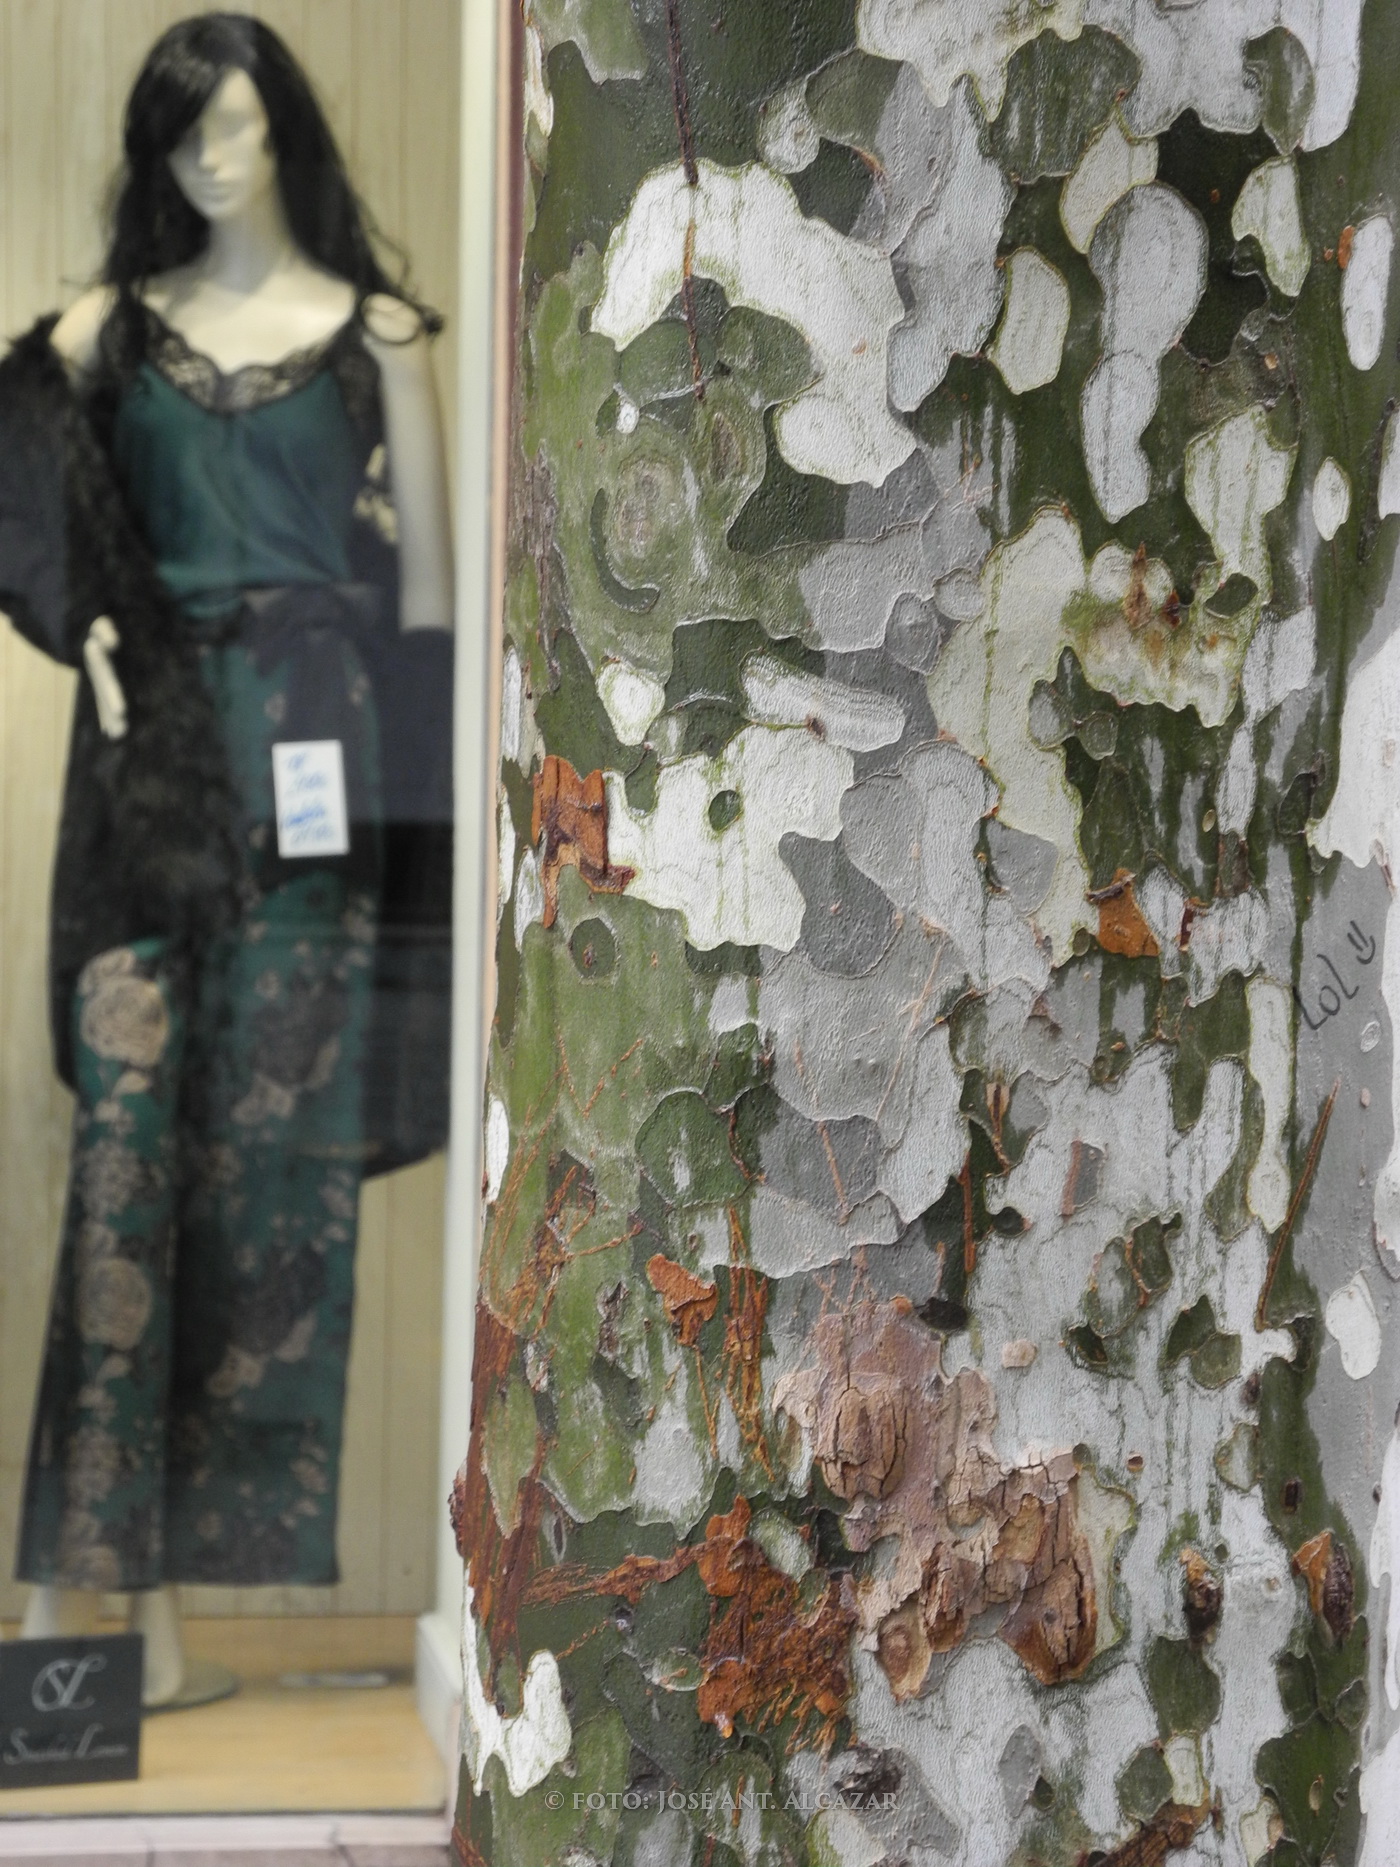 Primer plano de un tronco de árbol y en el fondo un maniquí con ropa de moda